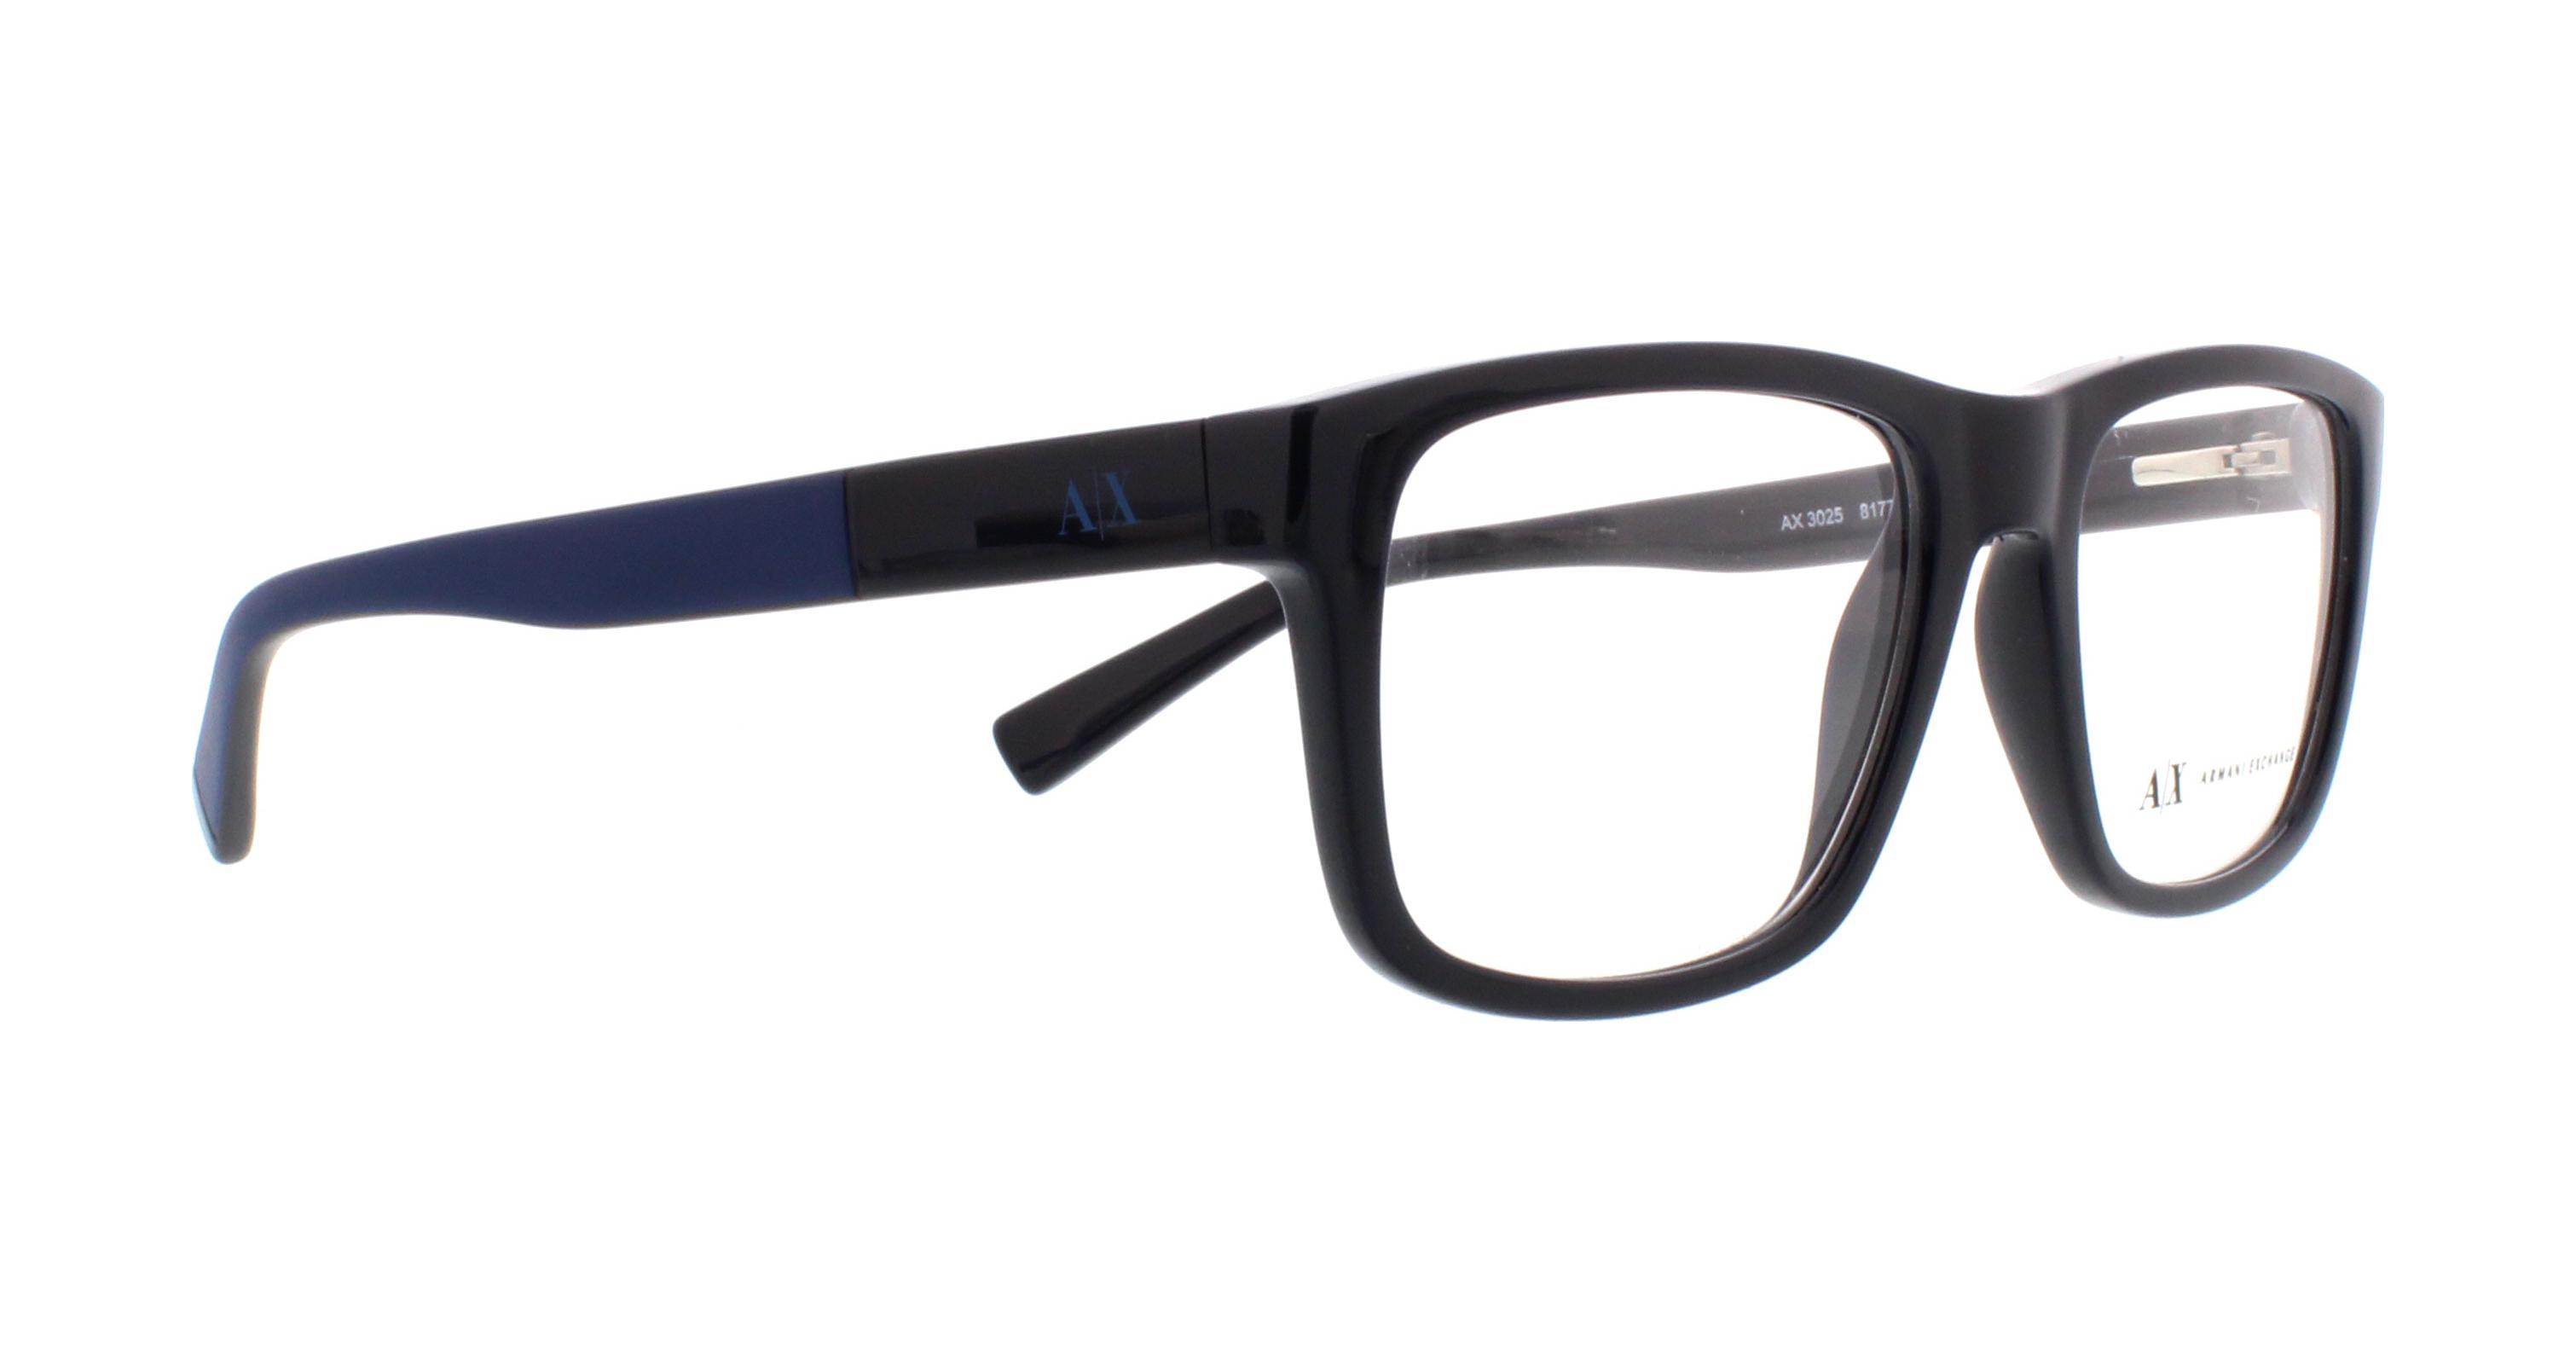 Eyeglasses Frames Exchange AX3025 Outlet. Armani Designer